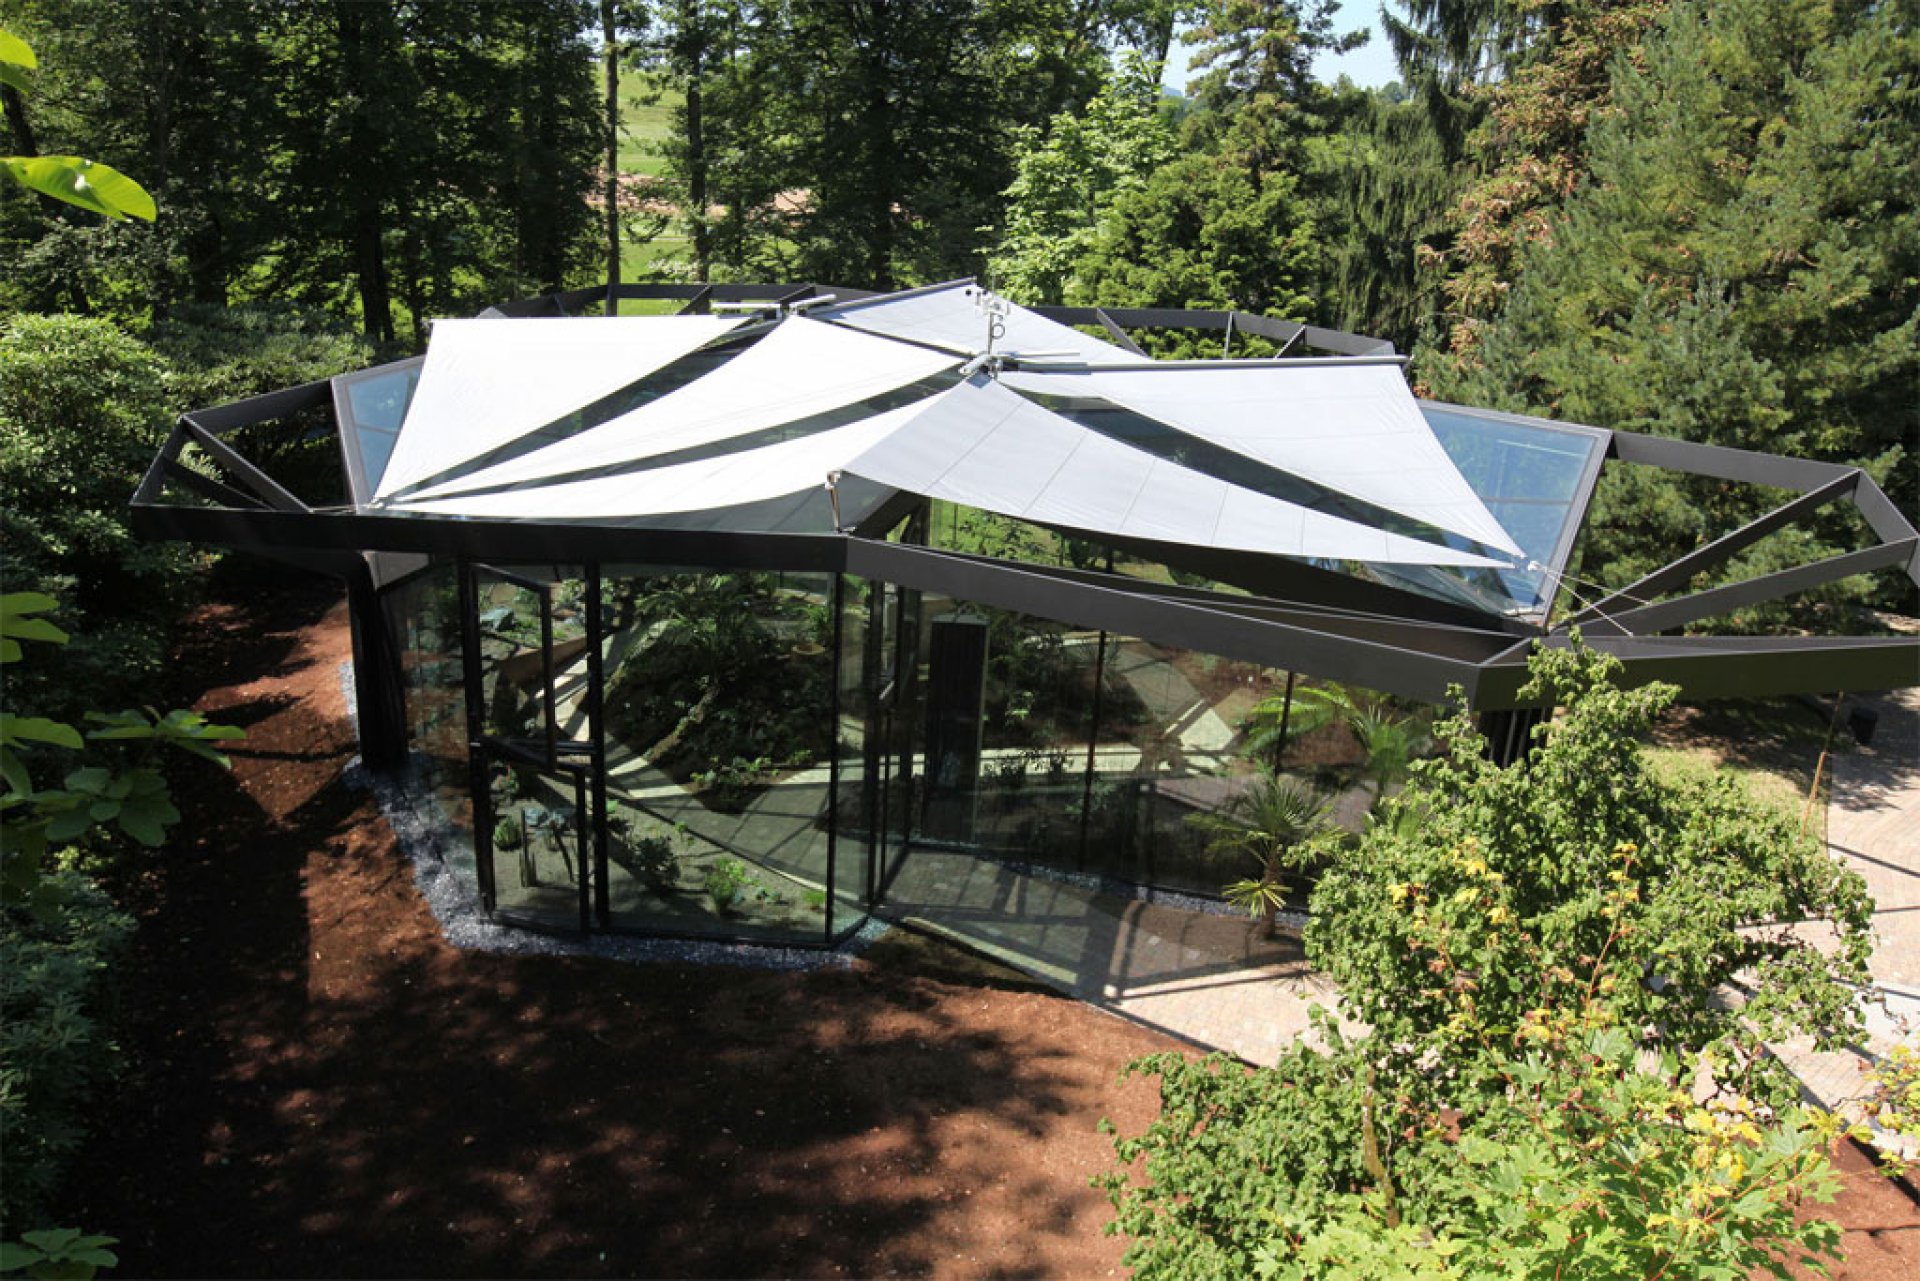 Sunsquare - vollautomatische Sonnensegelanlagen individuell geplant.